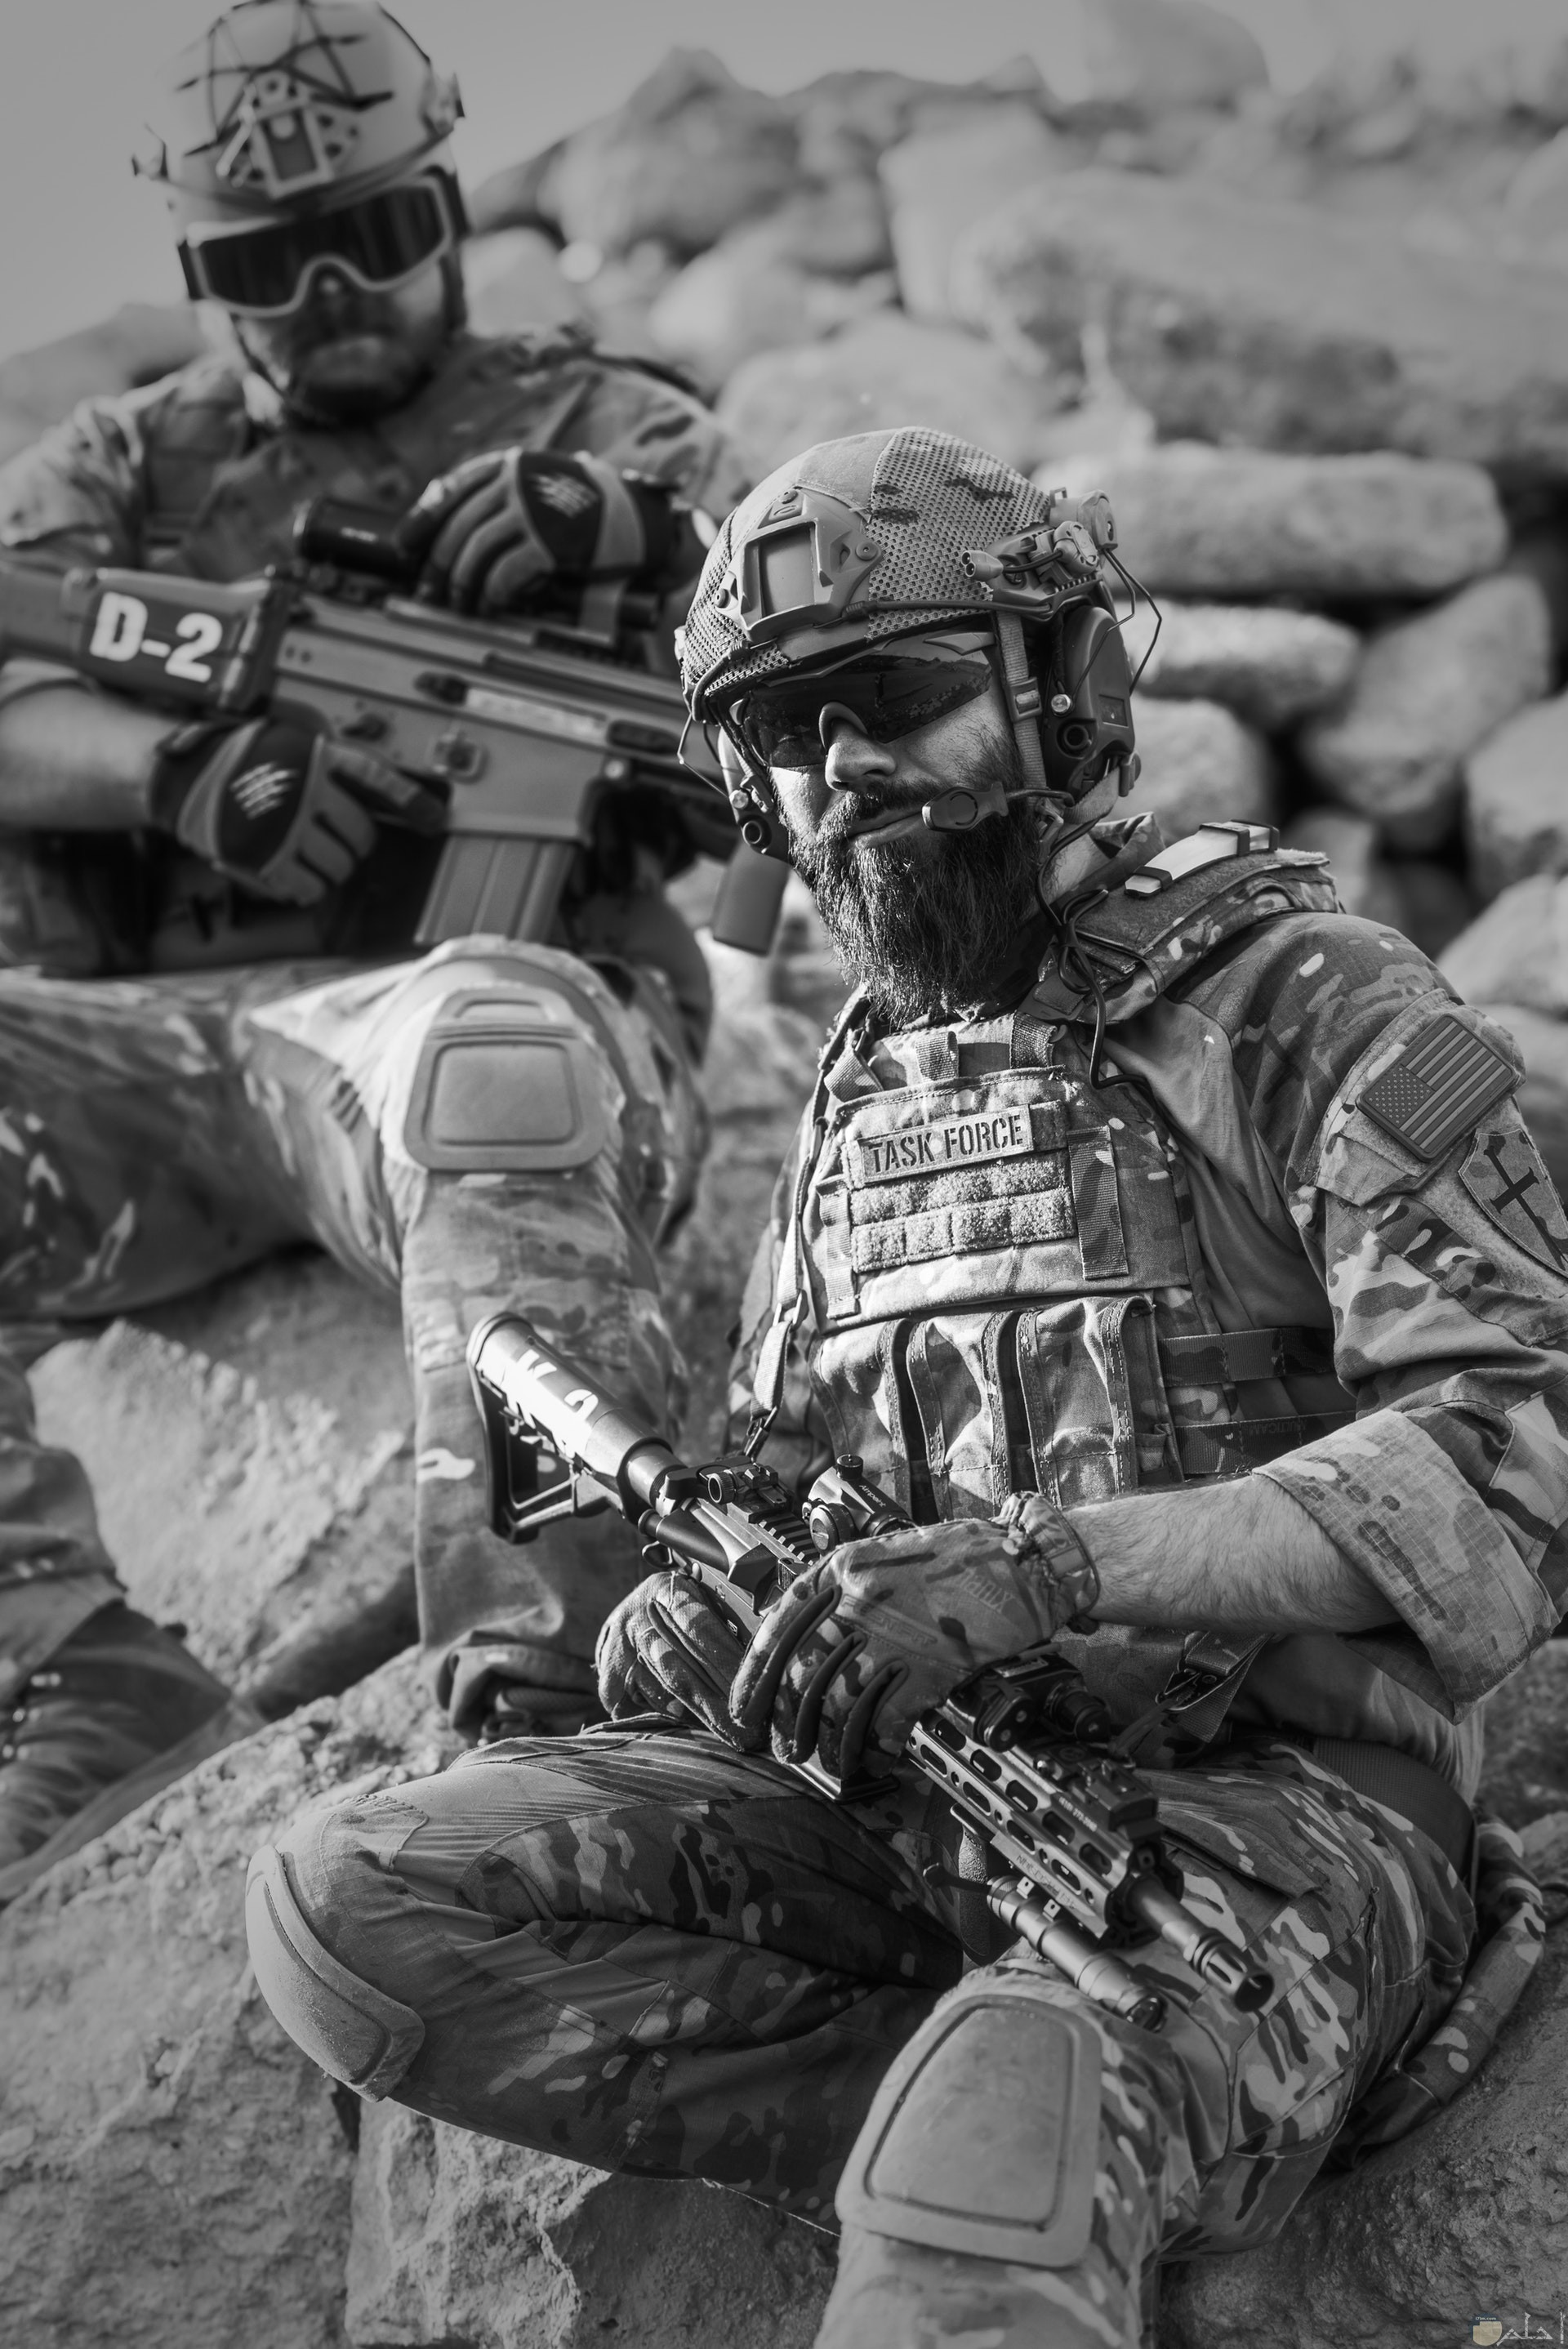 صورة أكشن مميزة بالأبيض والأسود لمجندين يحملان سلاح ويجلسان علي الصخر